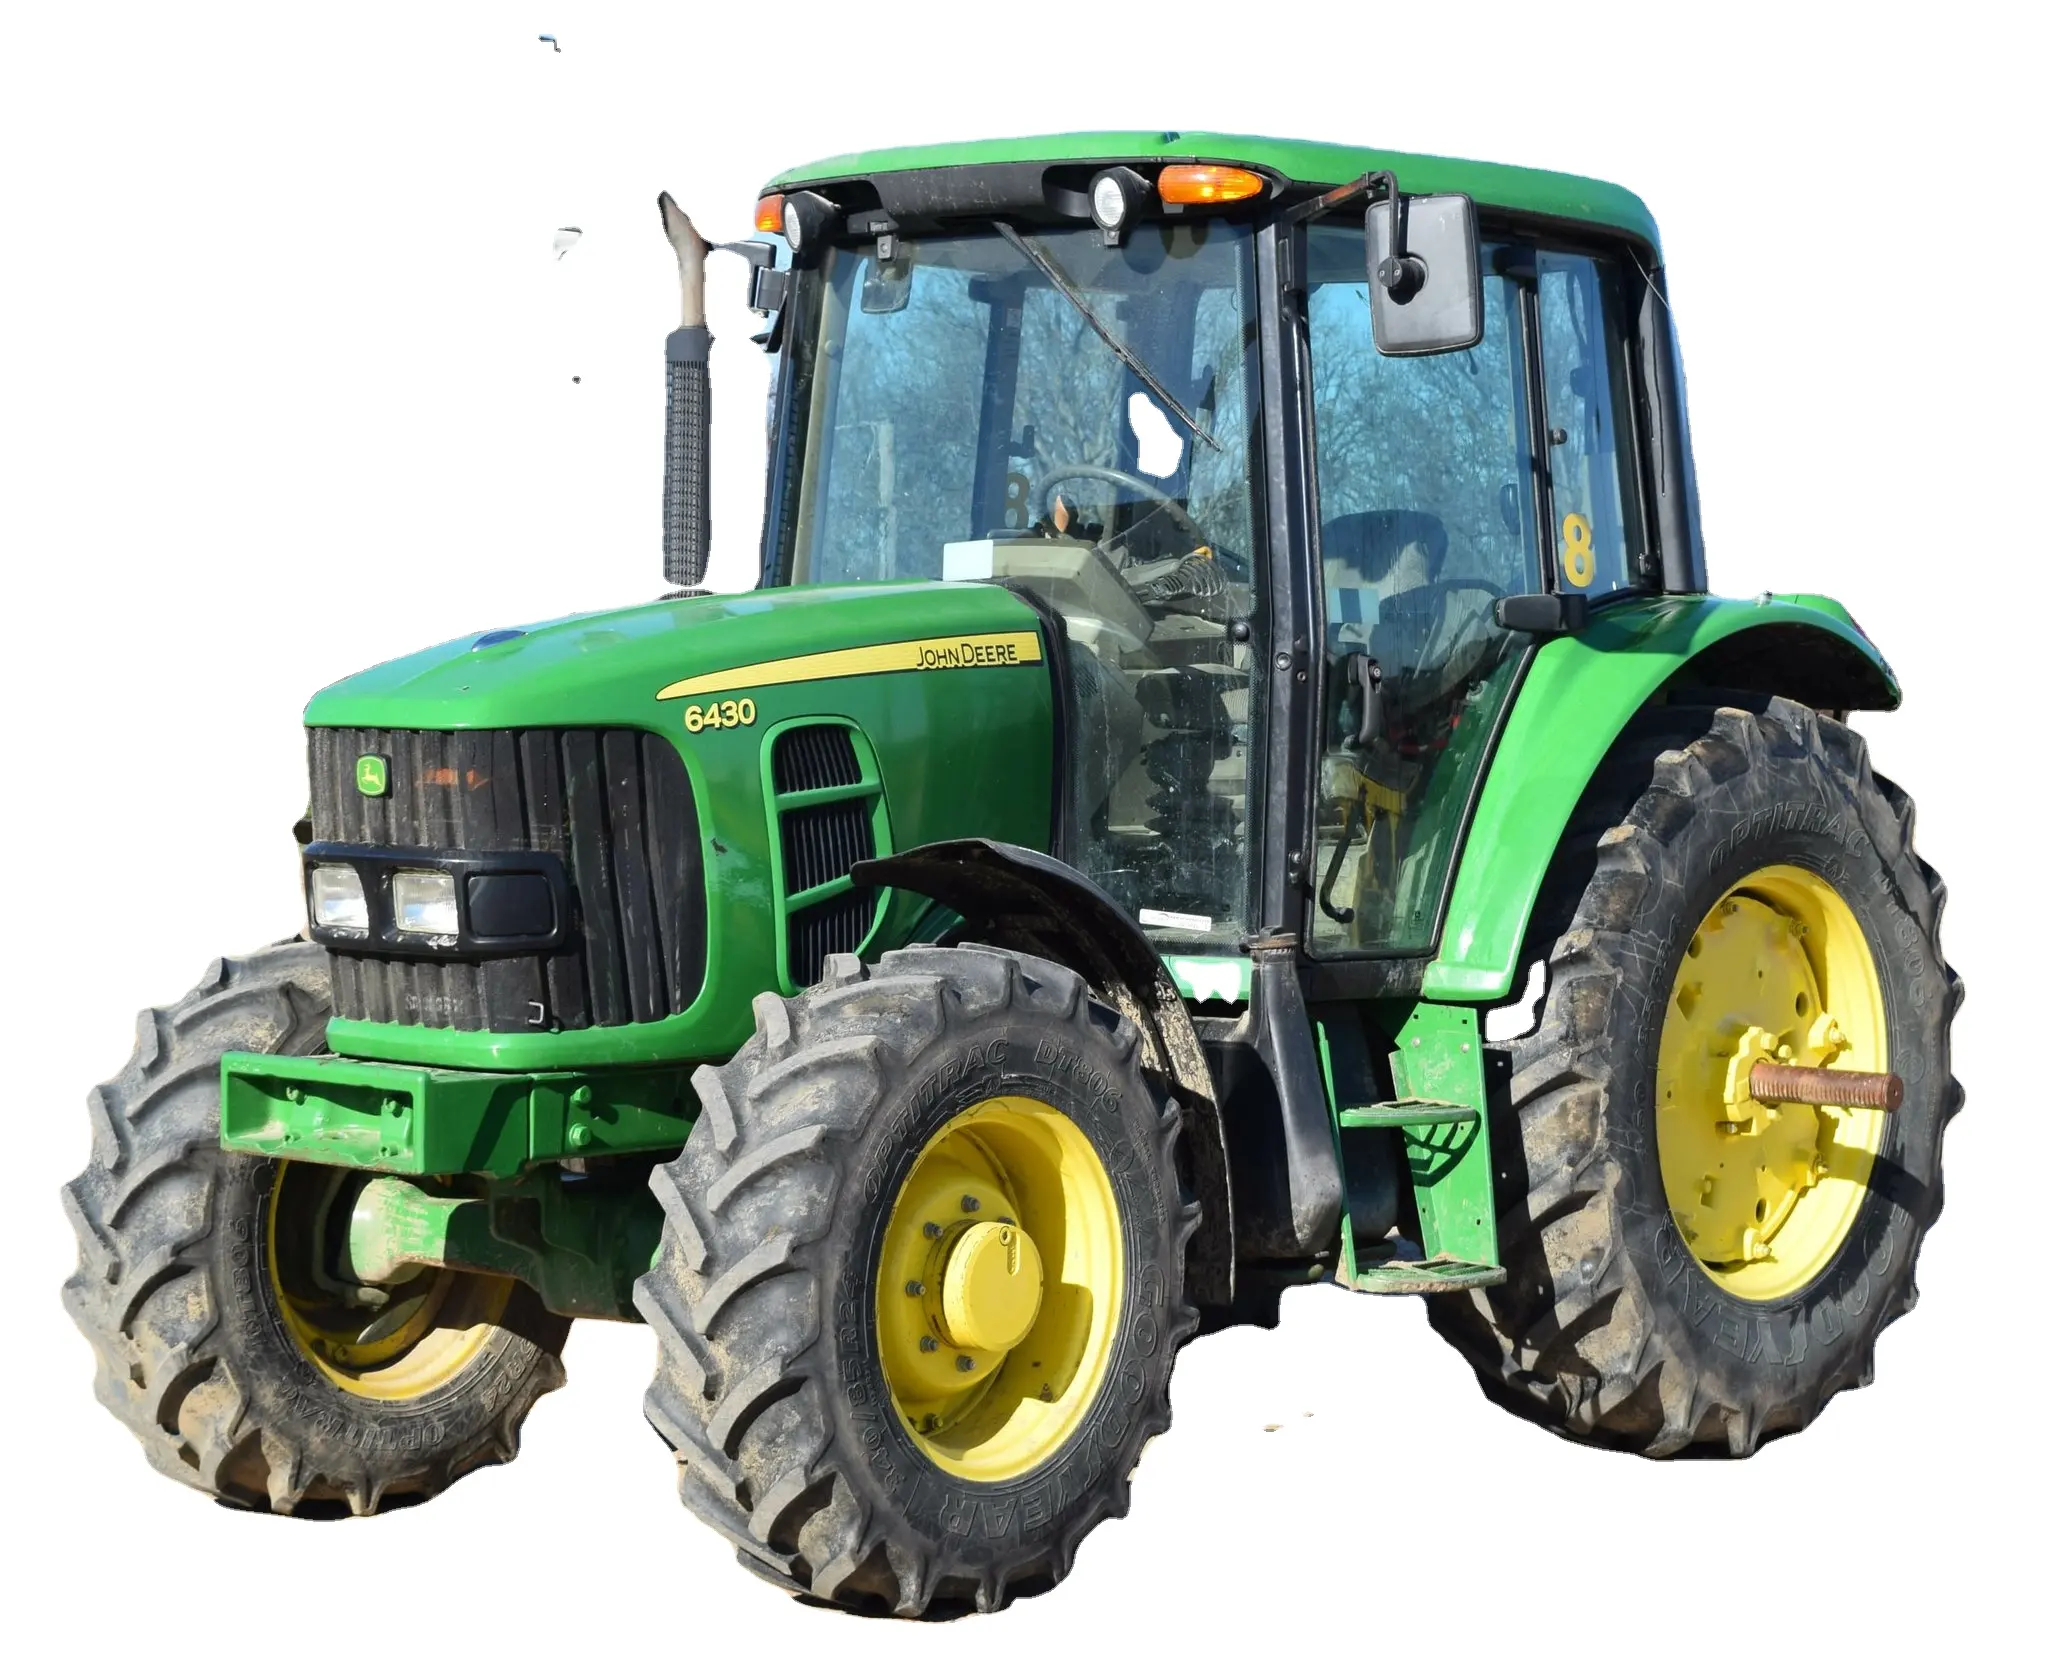 Gebrauchte Traktoren Massey Ferguson 1204 120 PS gute Qualität zum Verkauf landwirtschaft liche Maschinen Kompakt traktor Ackers chlepper